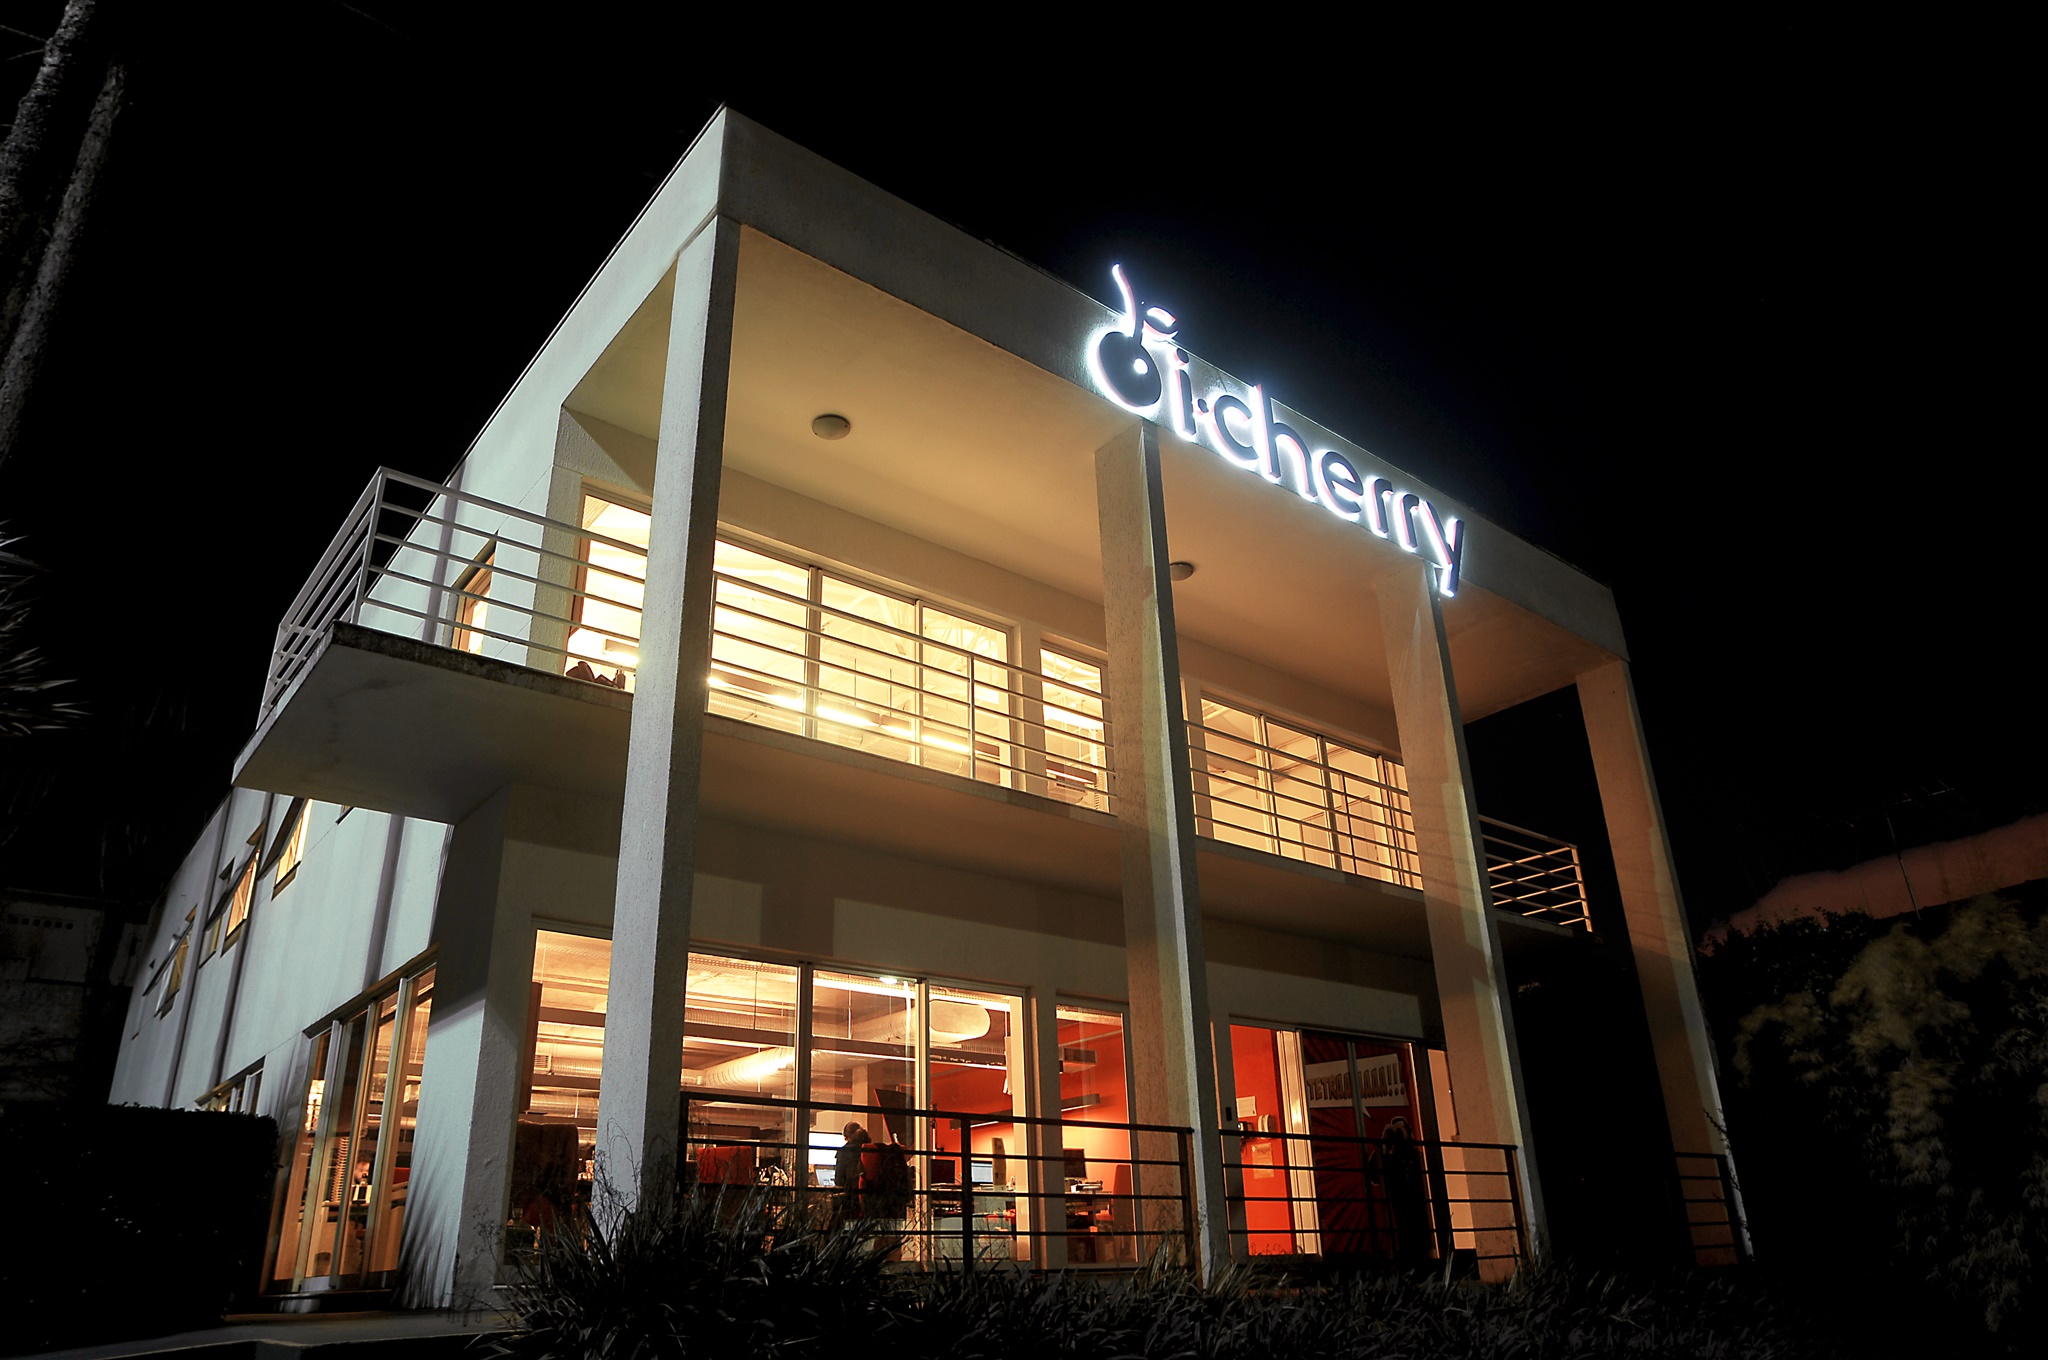 Foto da agencia da i-Cherry, um prédio branco com salas amplas grandes portas de vidro e uma grande logo da empresa luminosa na fachada